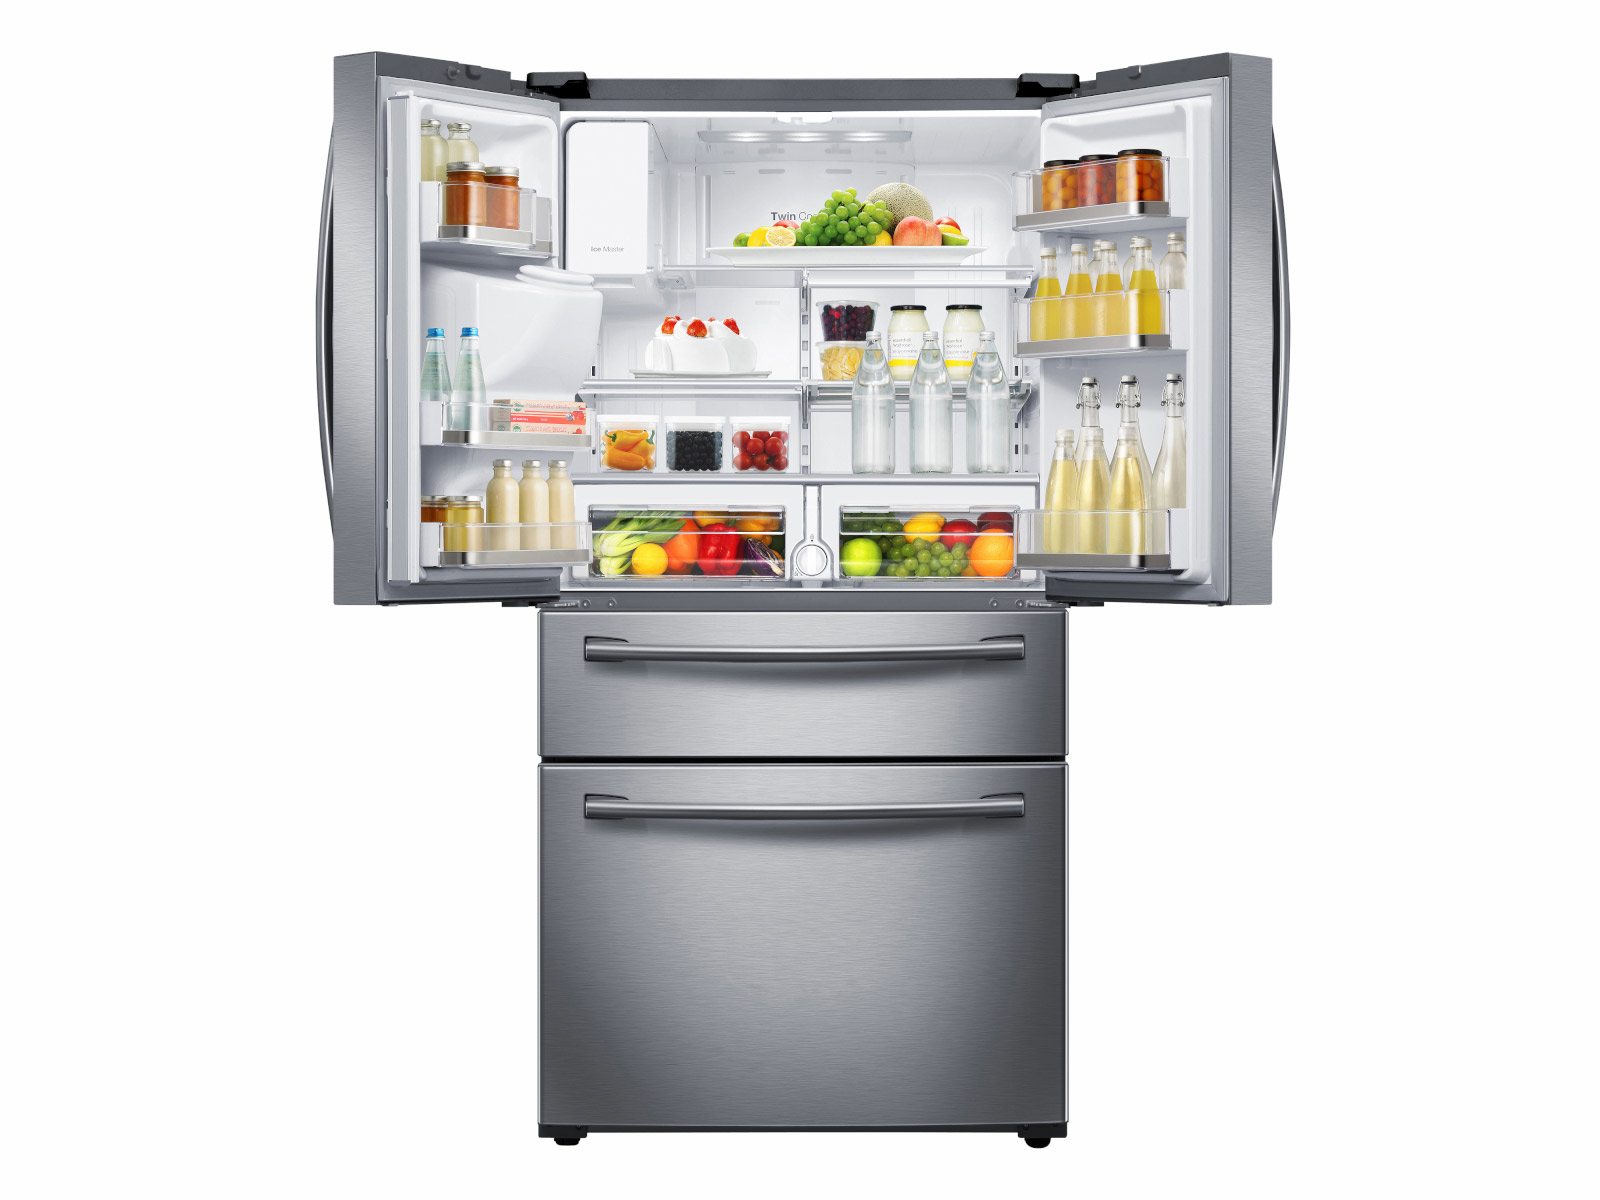 https://image-us.samsung.com/SamsungUS/home/home-appliances/refrigerators/4-door-french-door/pdp/rf28hmedbsr/gallery/09_Refrigerator_French-Door_RF28HMEDBSR_Top_Open_Doors_With_Food_Drinks_Bottles_Adjustable_Shelf_Silver.jpg?$product-details-jpg$